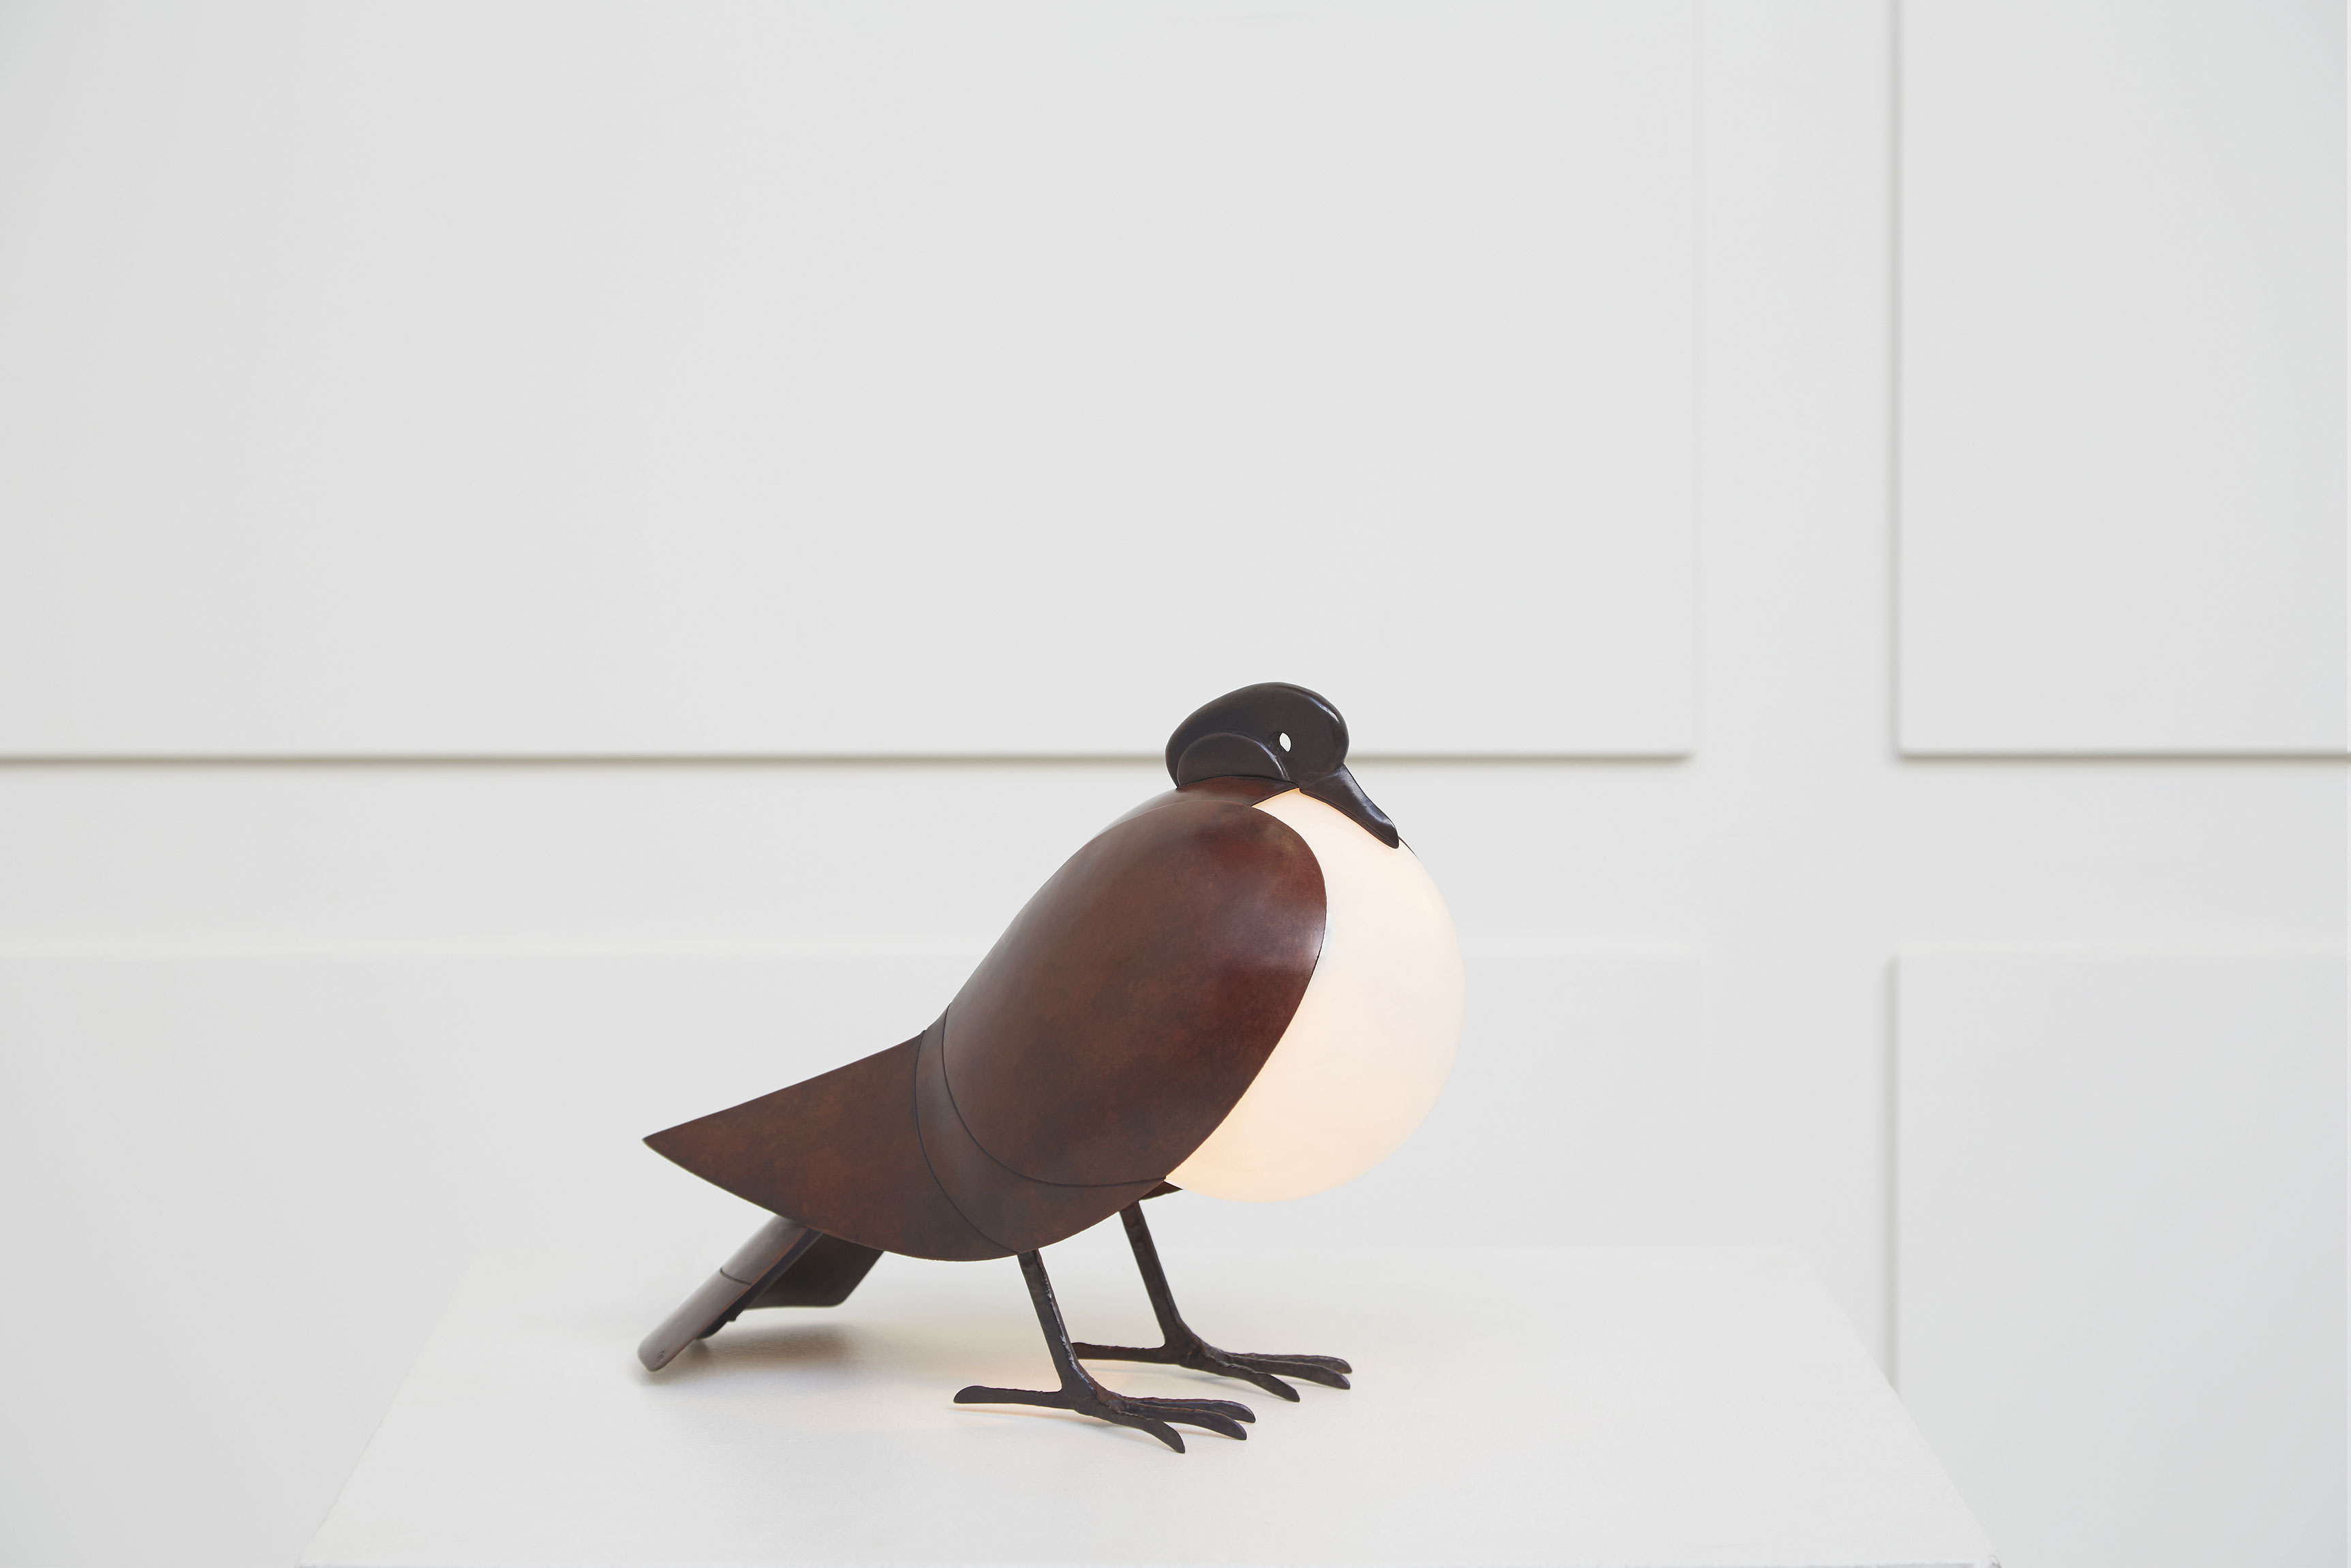 Francois-Xavier Lalanne, “Pigeon” lamp, vue 01